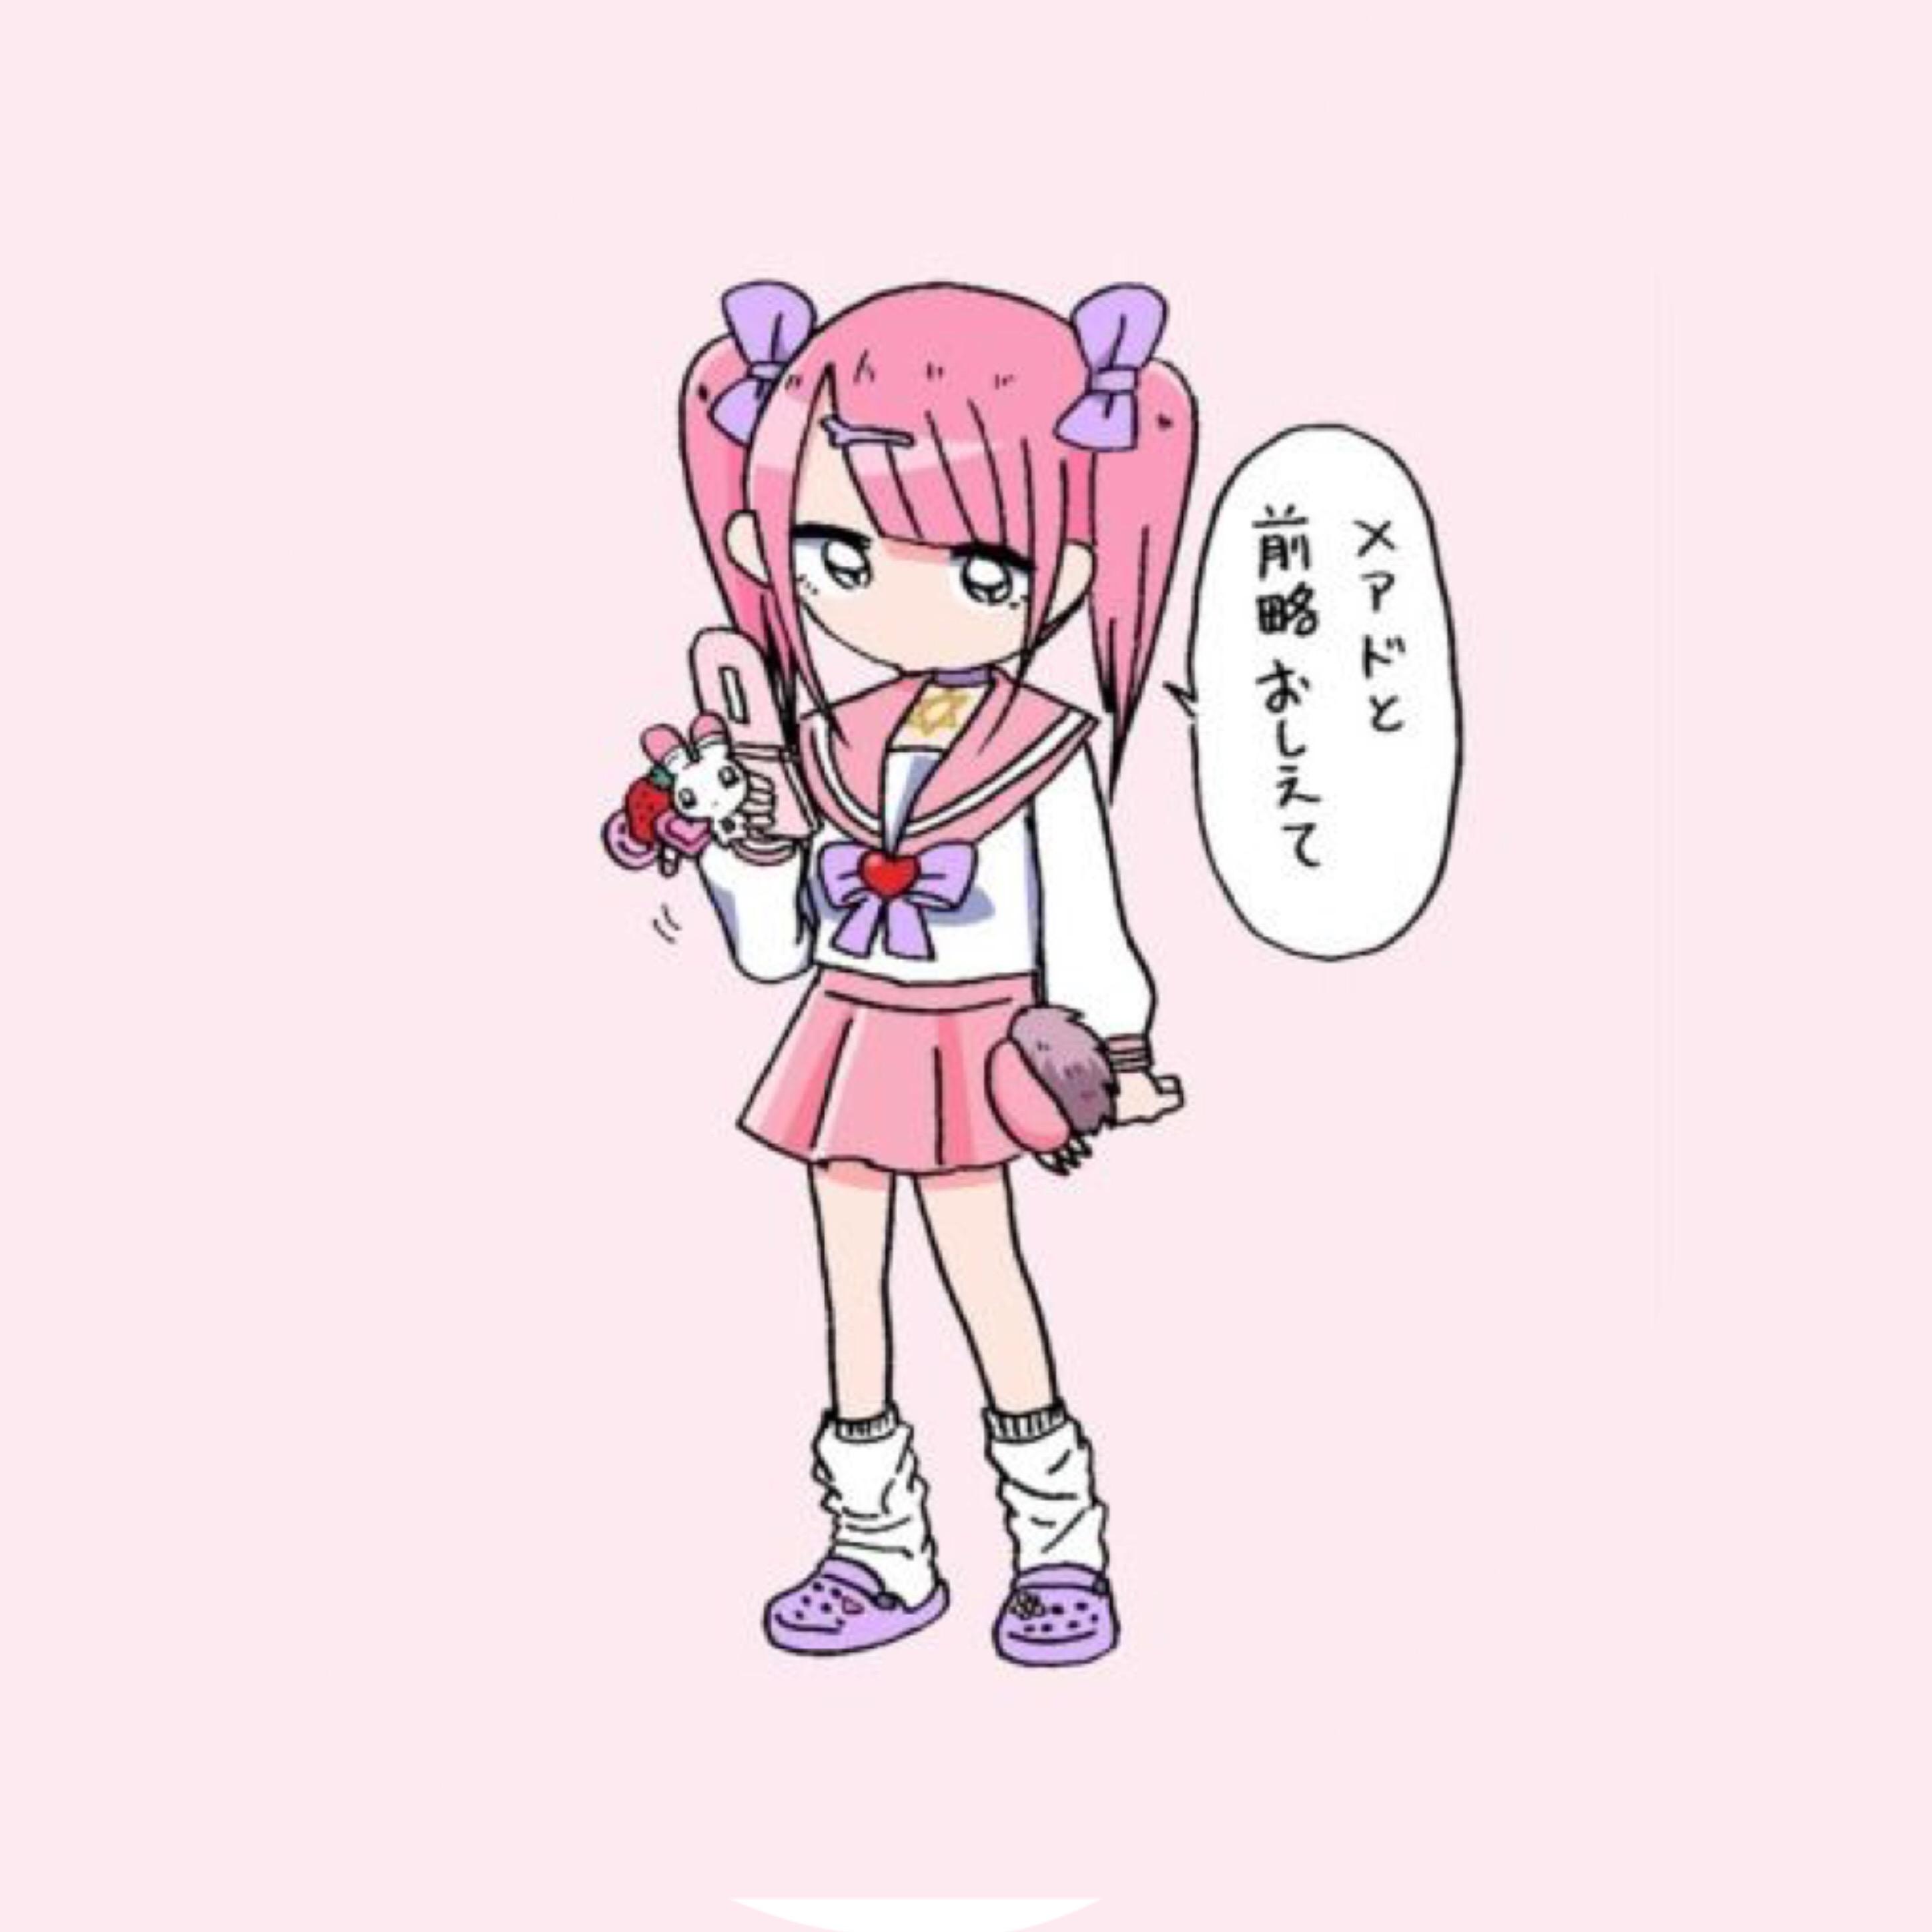 menhera menherachan yamikawaii yami kawaii pink creepyc